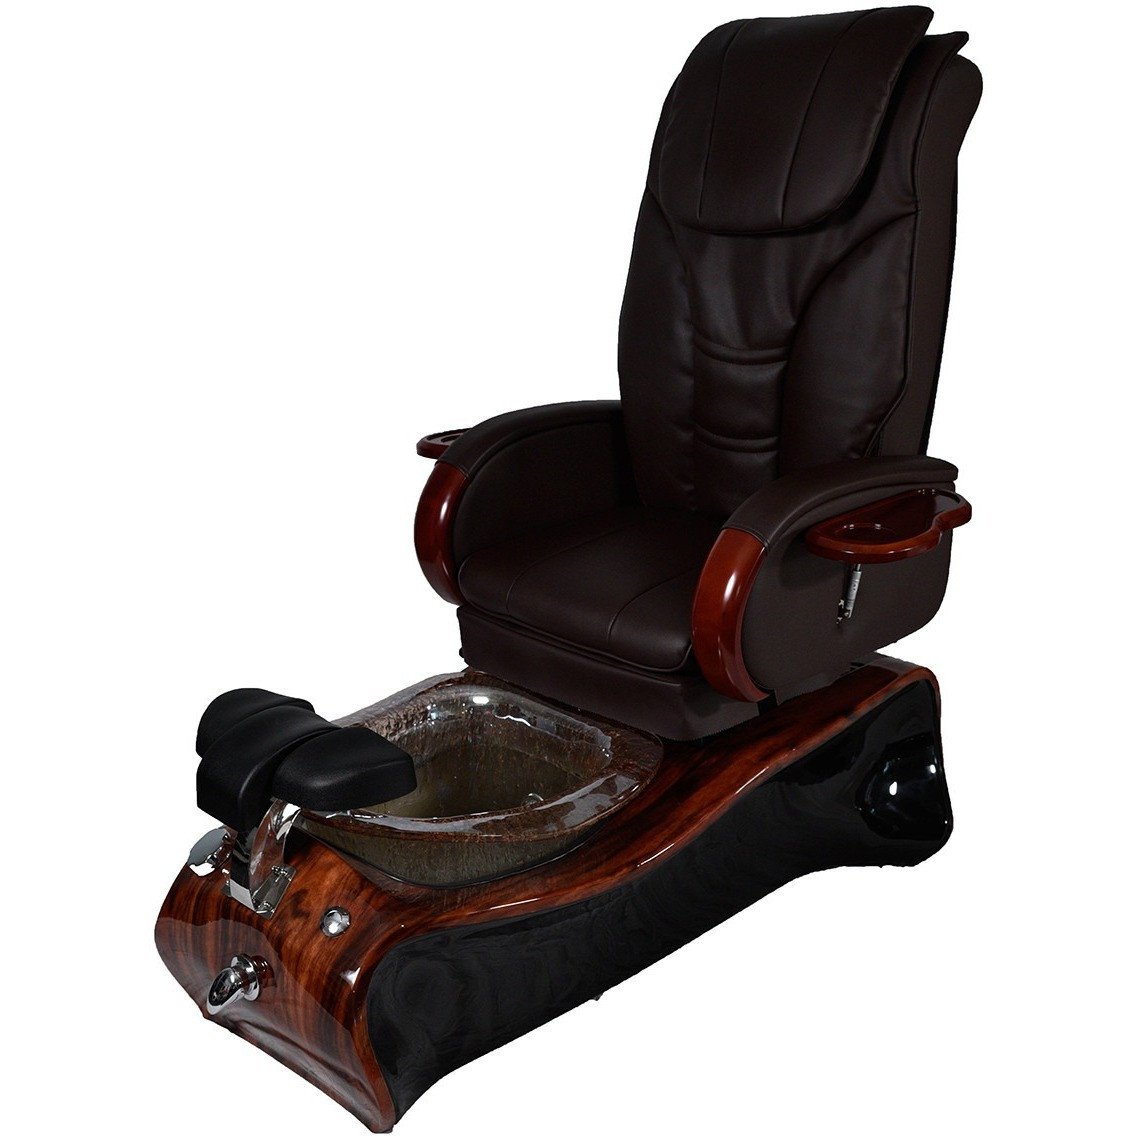 Essential Spa Equipment - Pedicure Chair #2